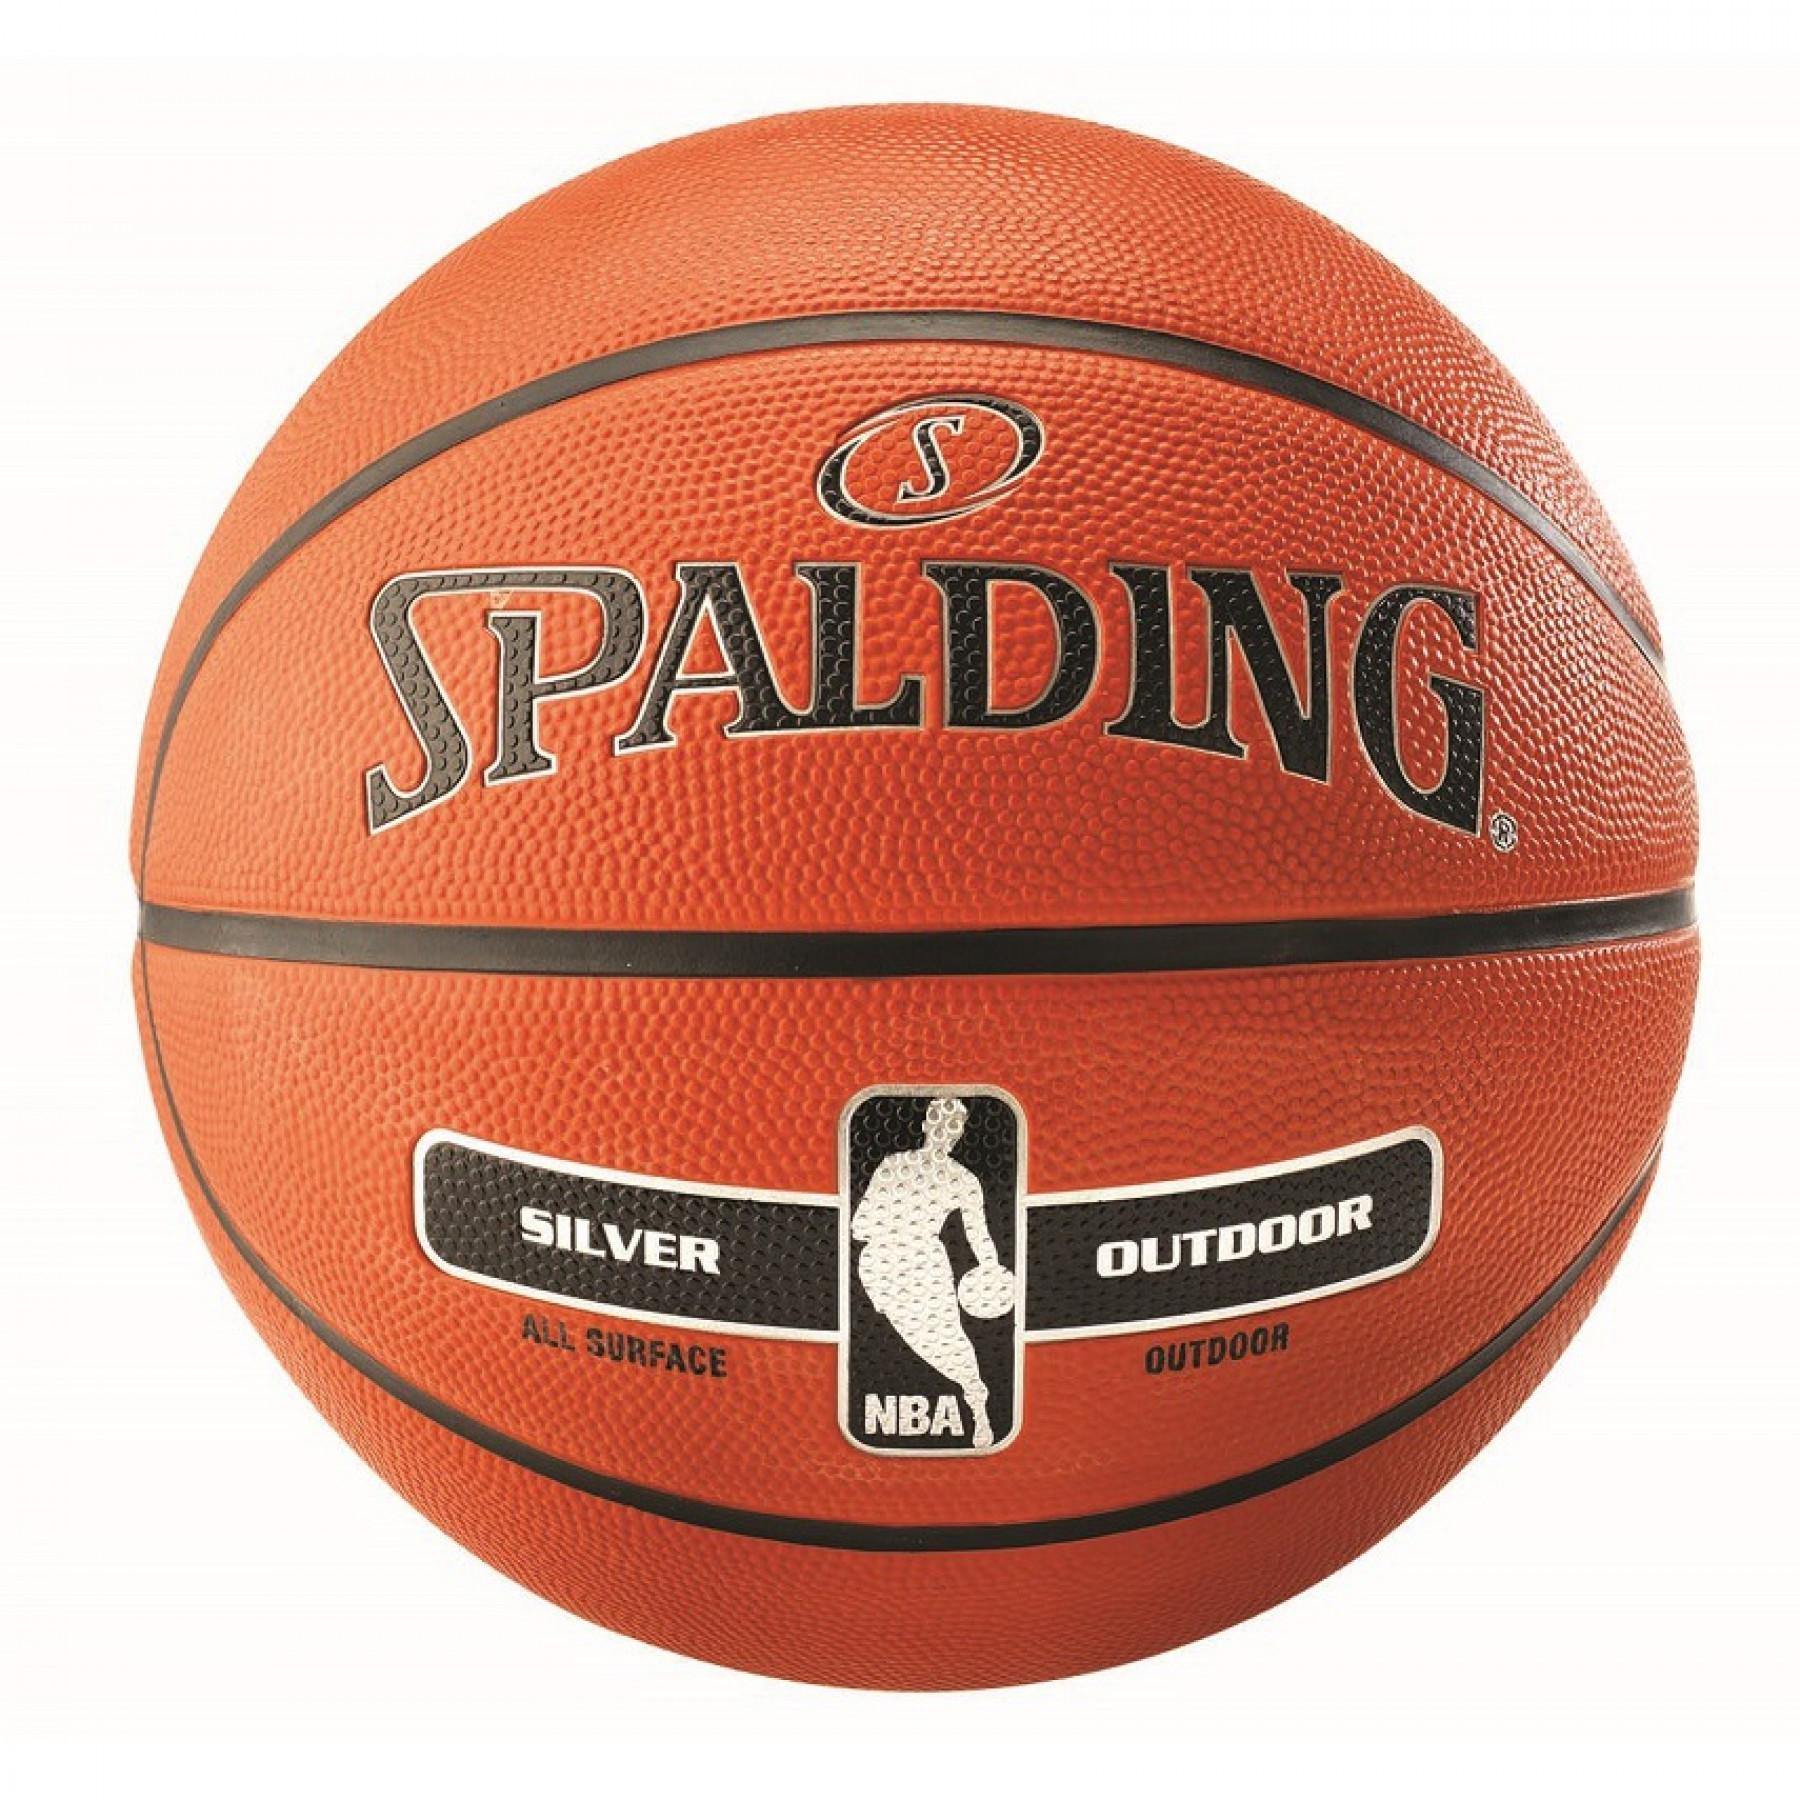 Ballon Spalding NBA Silver Outdoor